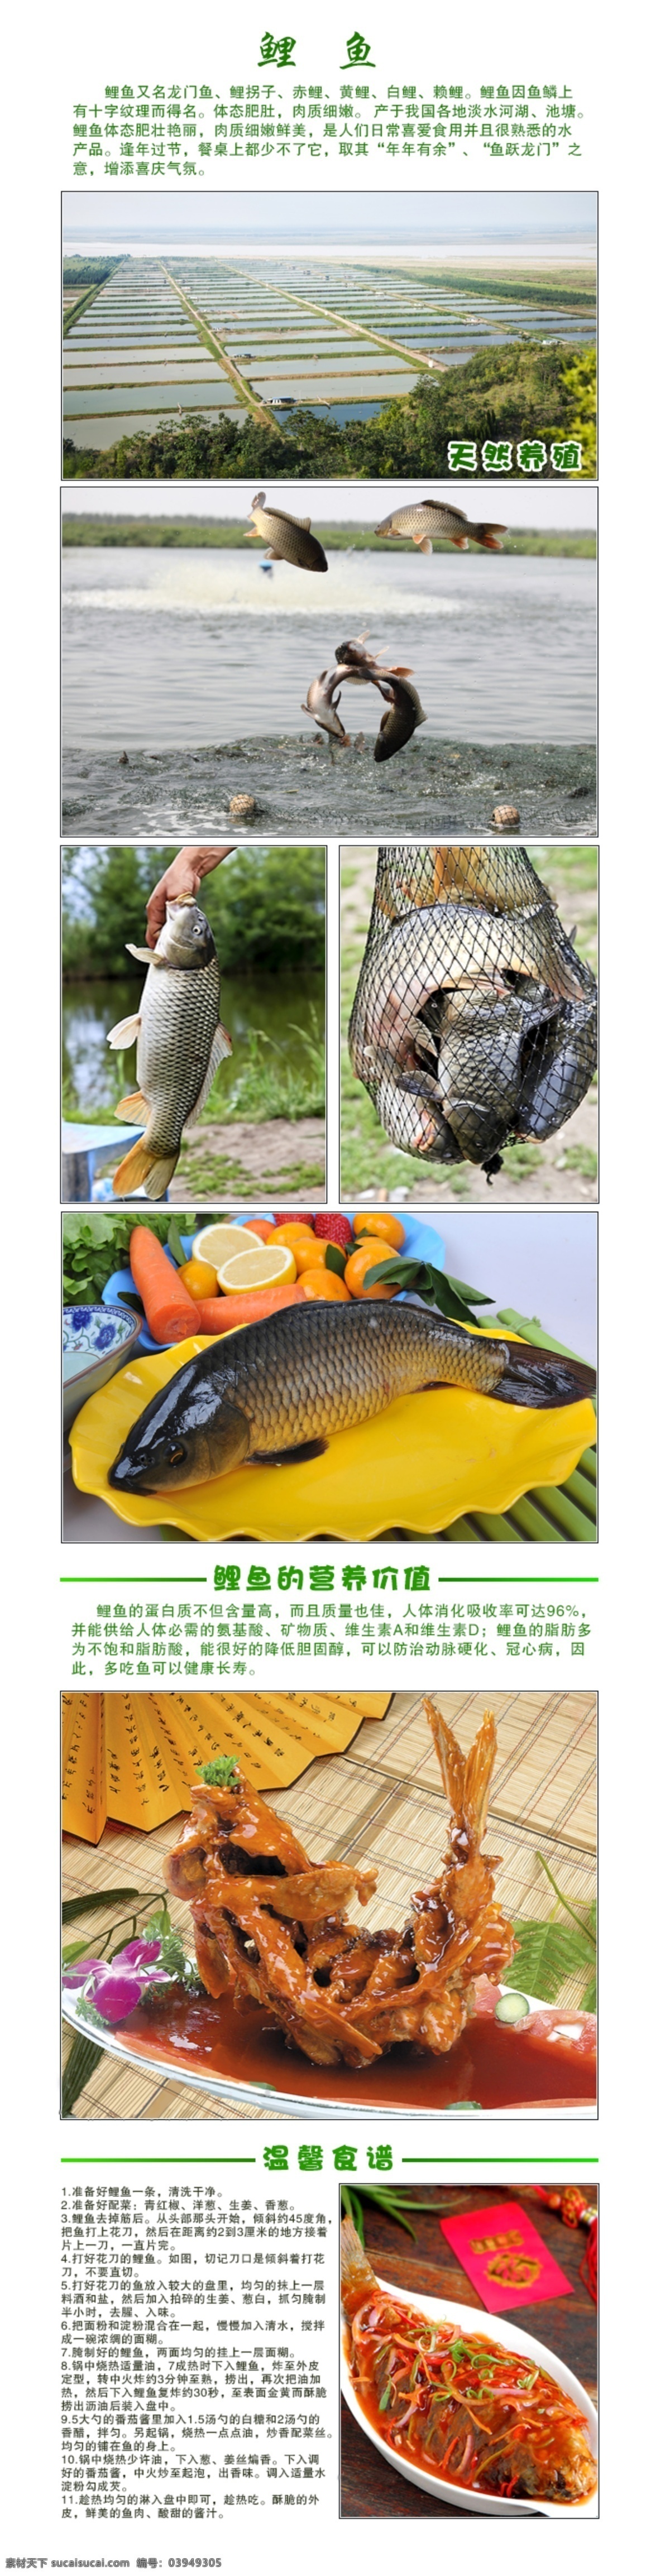 鲤鱼 鲤鱼介绍 宣传图片 鲤鱼做法 鲤鱼营养价值 淘宝界面设计